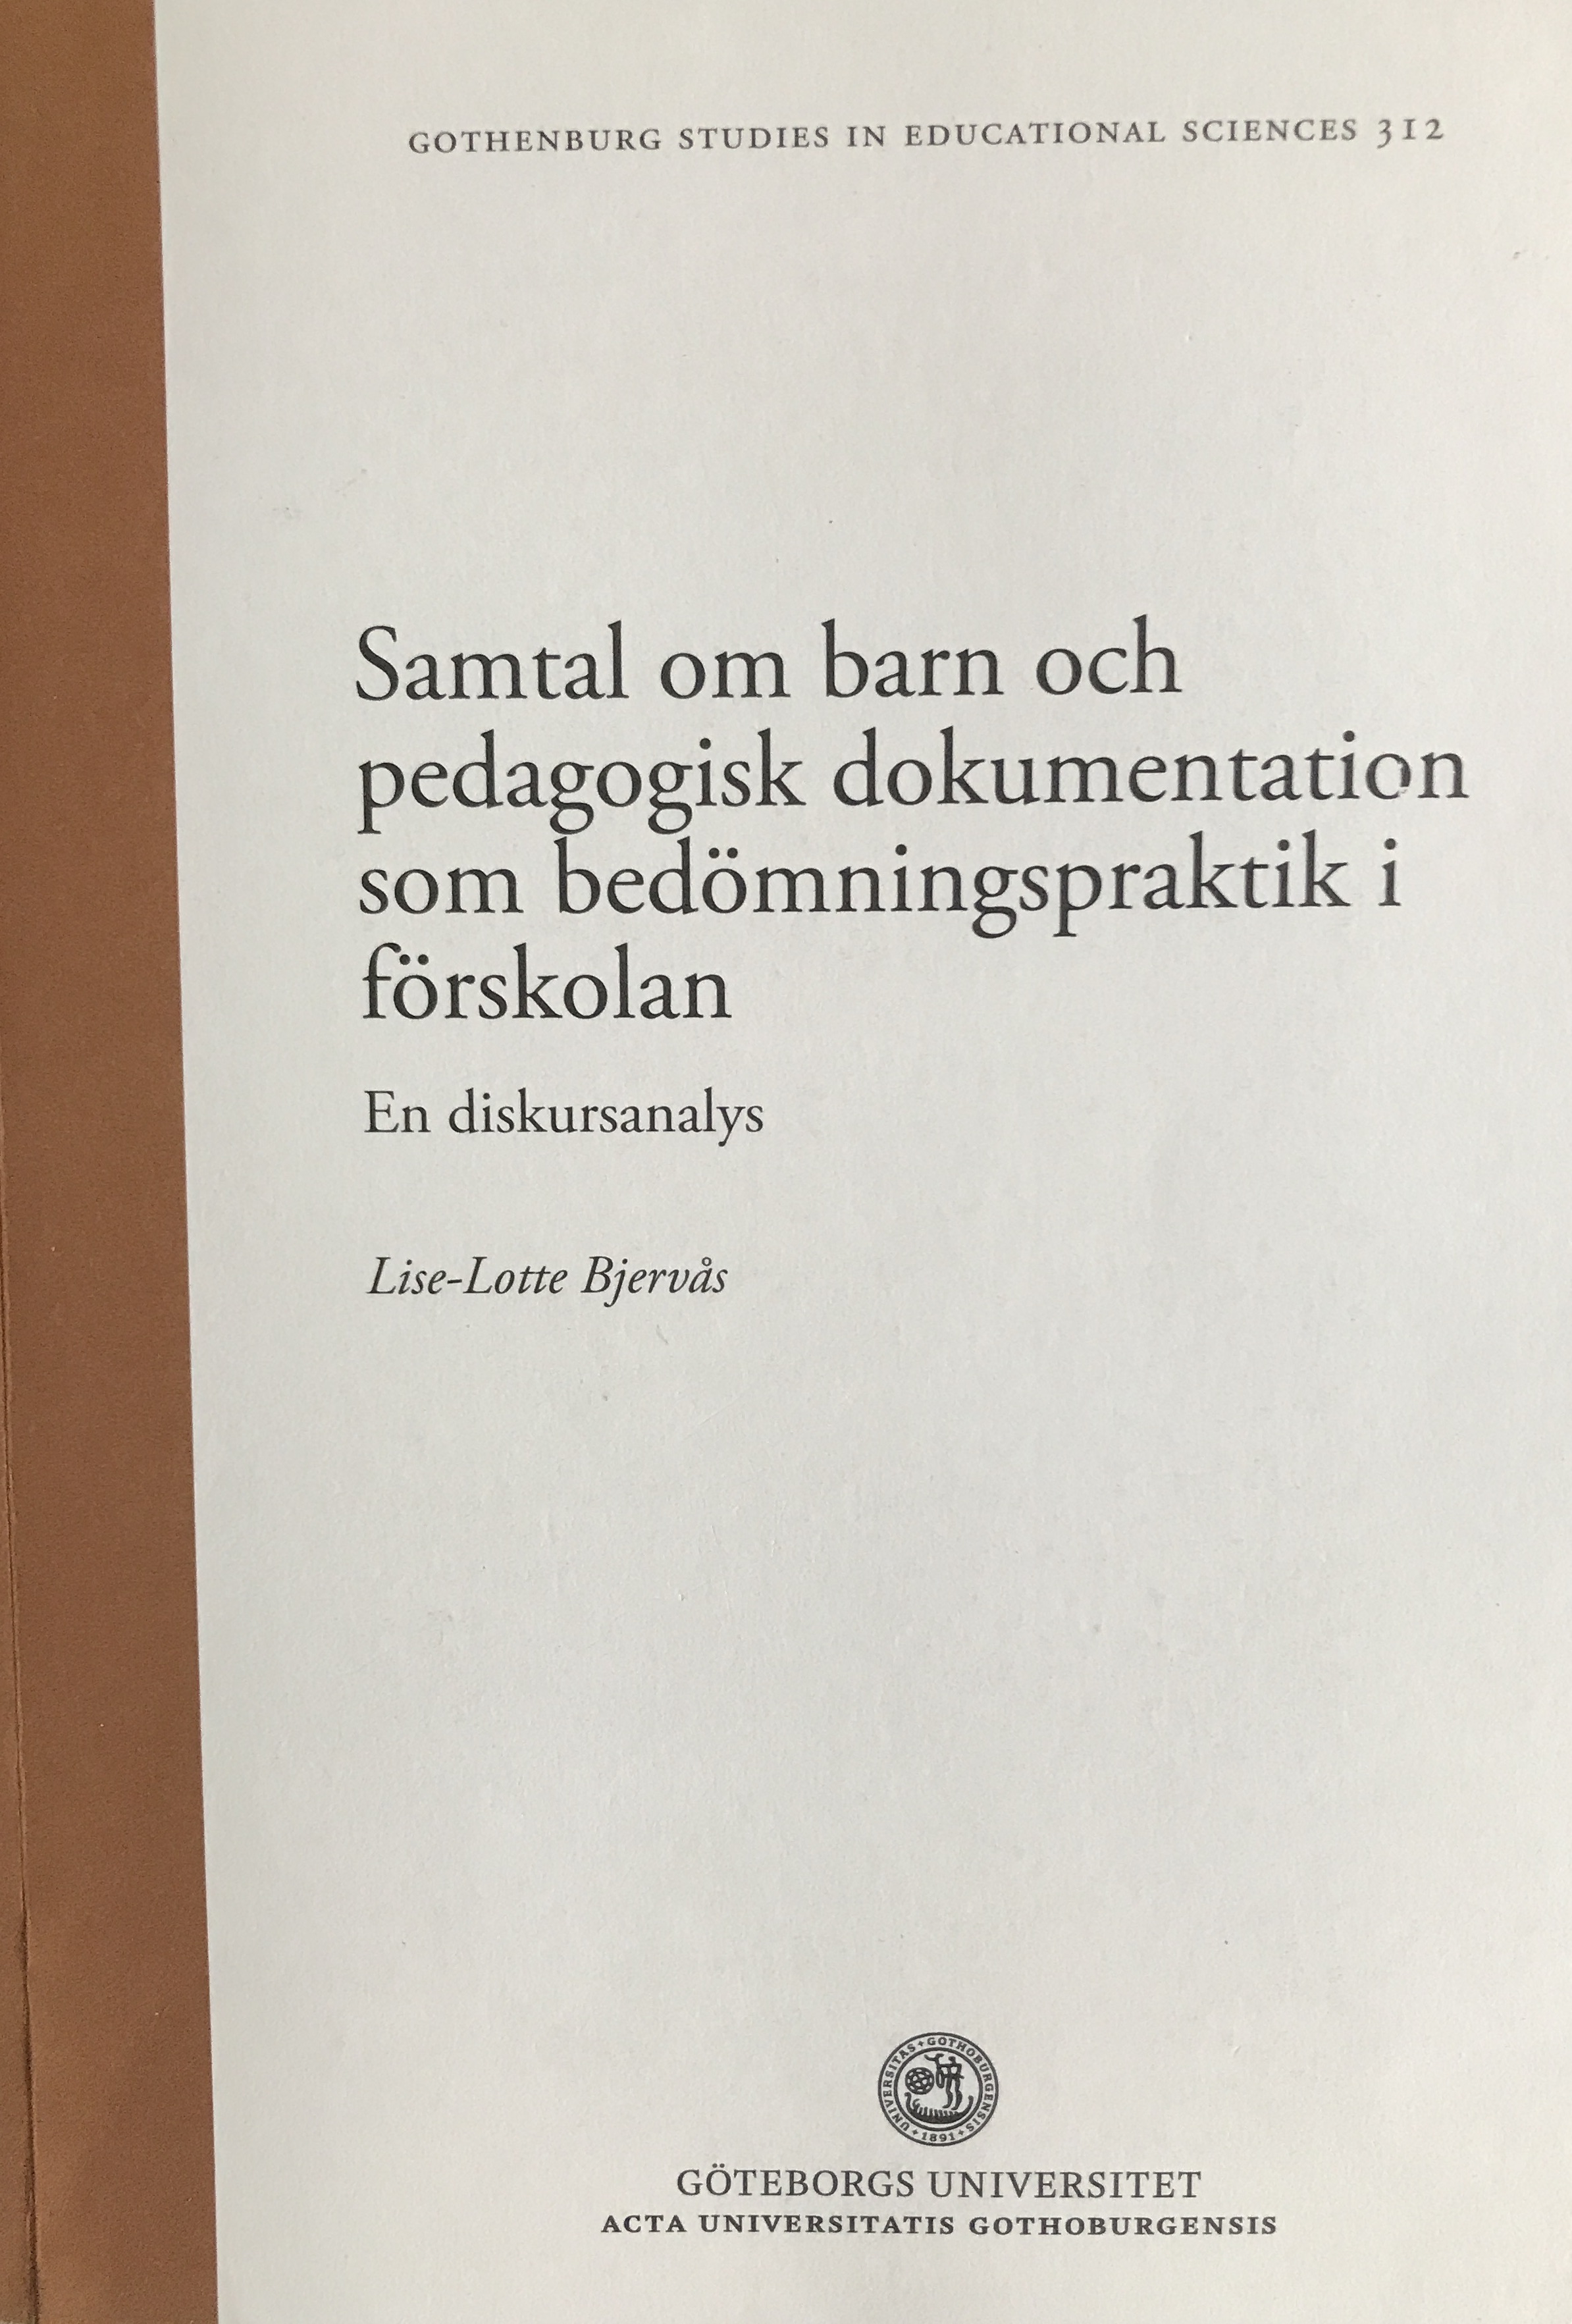 Samtal om barn och pedagogisk dokumentation som bedömningspraktik som bedömningspraktik i förskolan; Lise-Lotte Bjervås; 2011